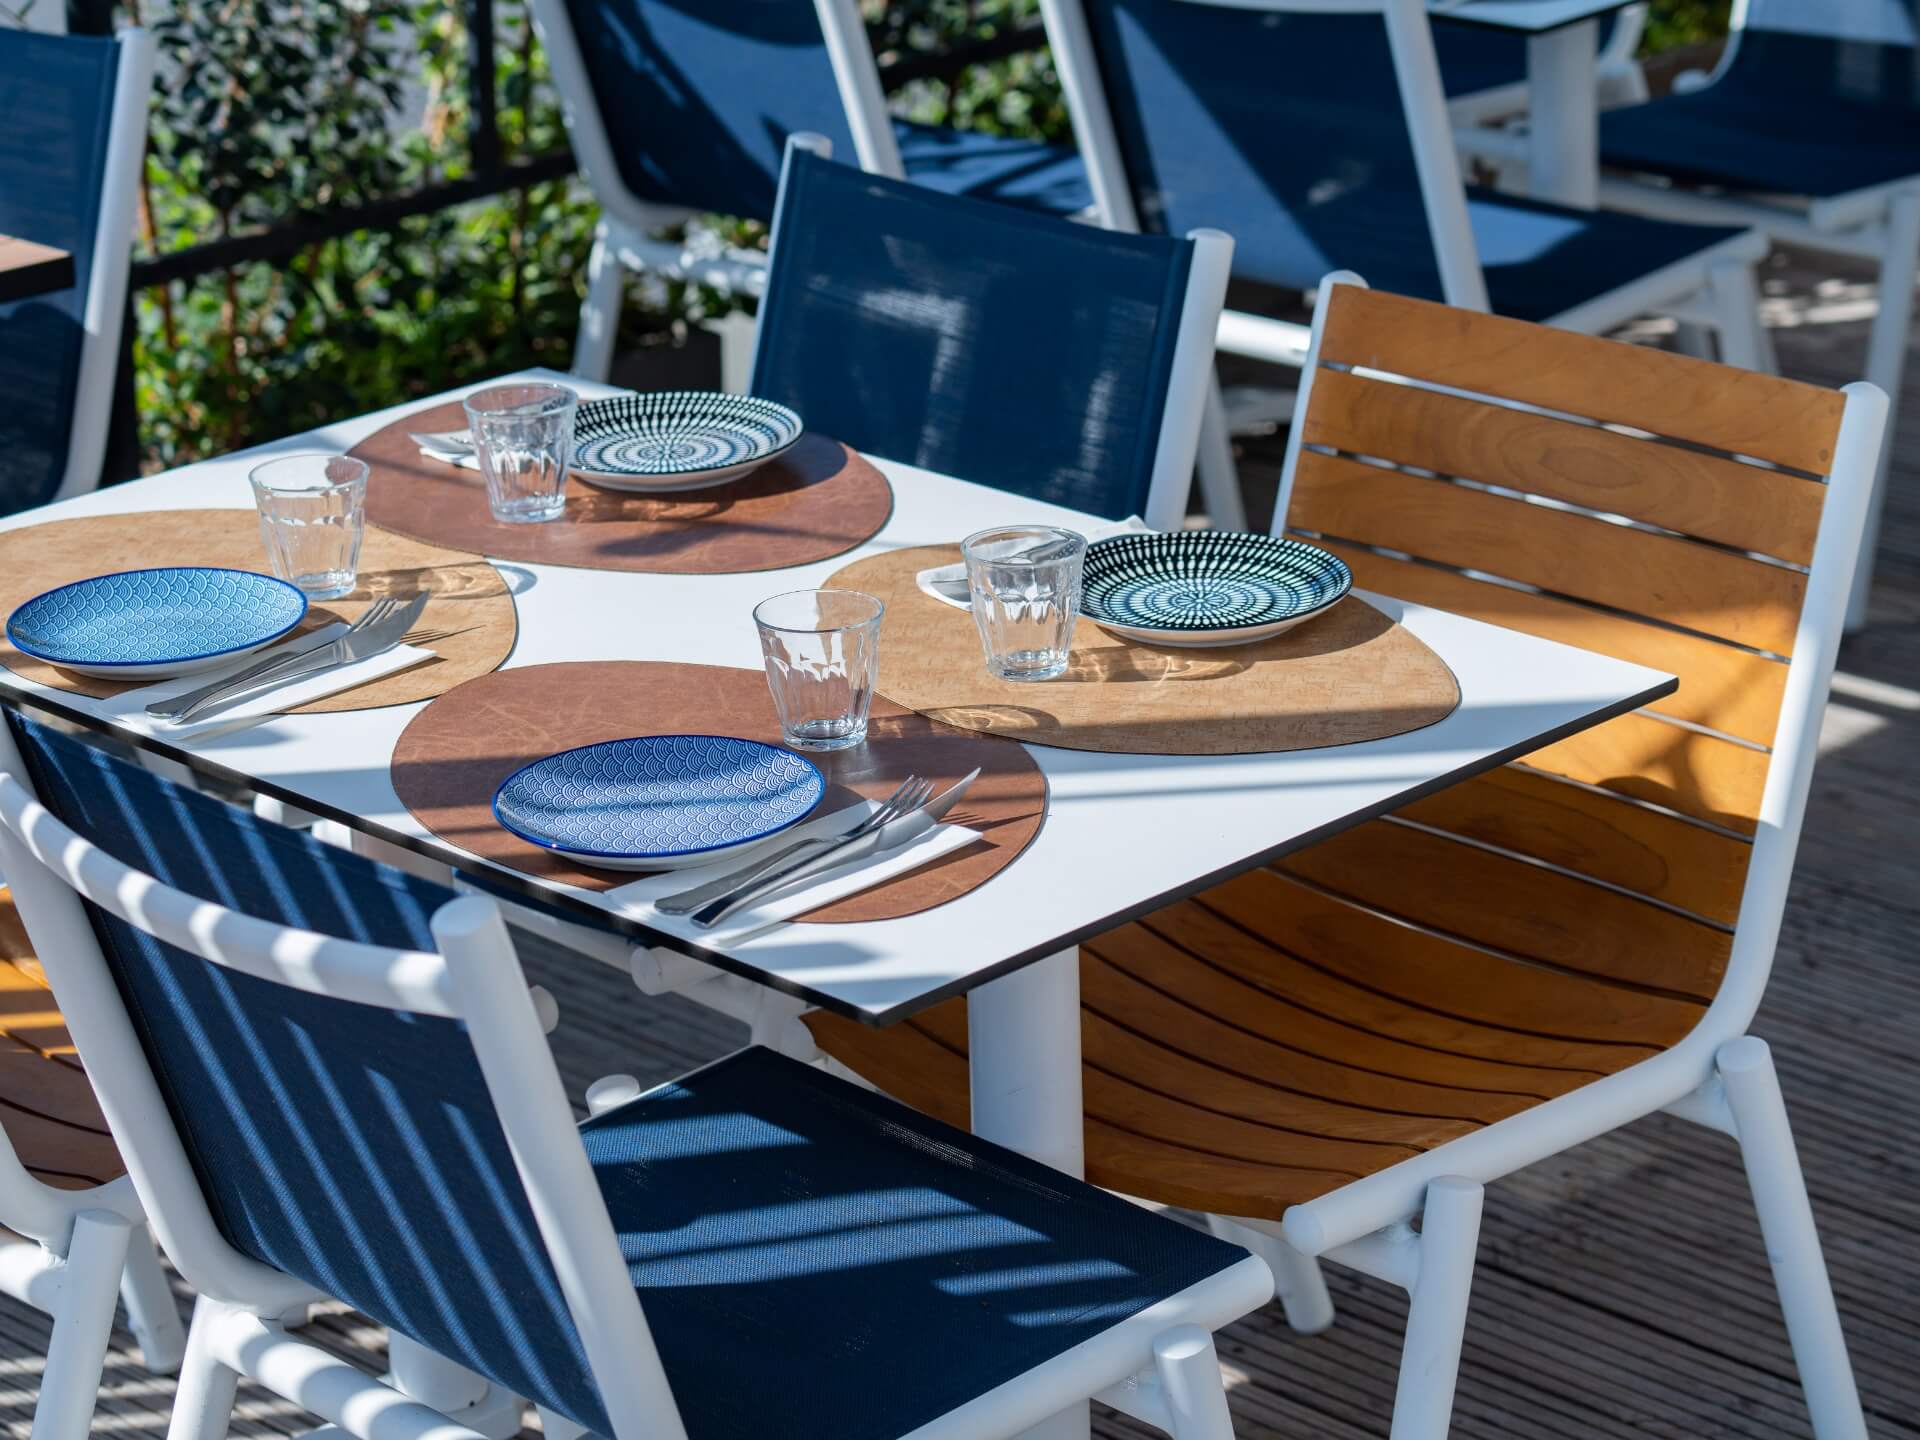 Grande table et quatre chaises design en bois et métal, avec le couvert mis et le soleil du sud..